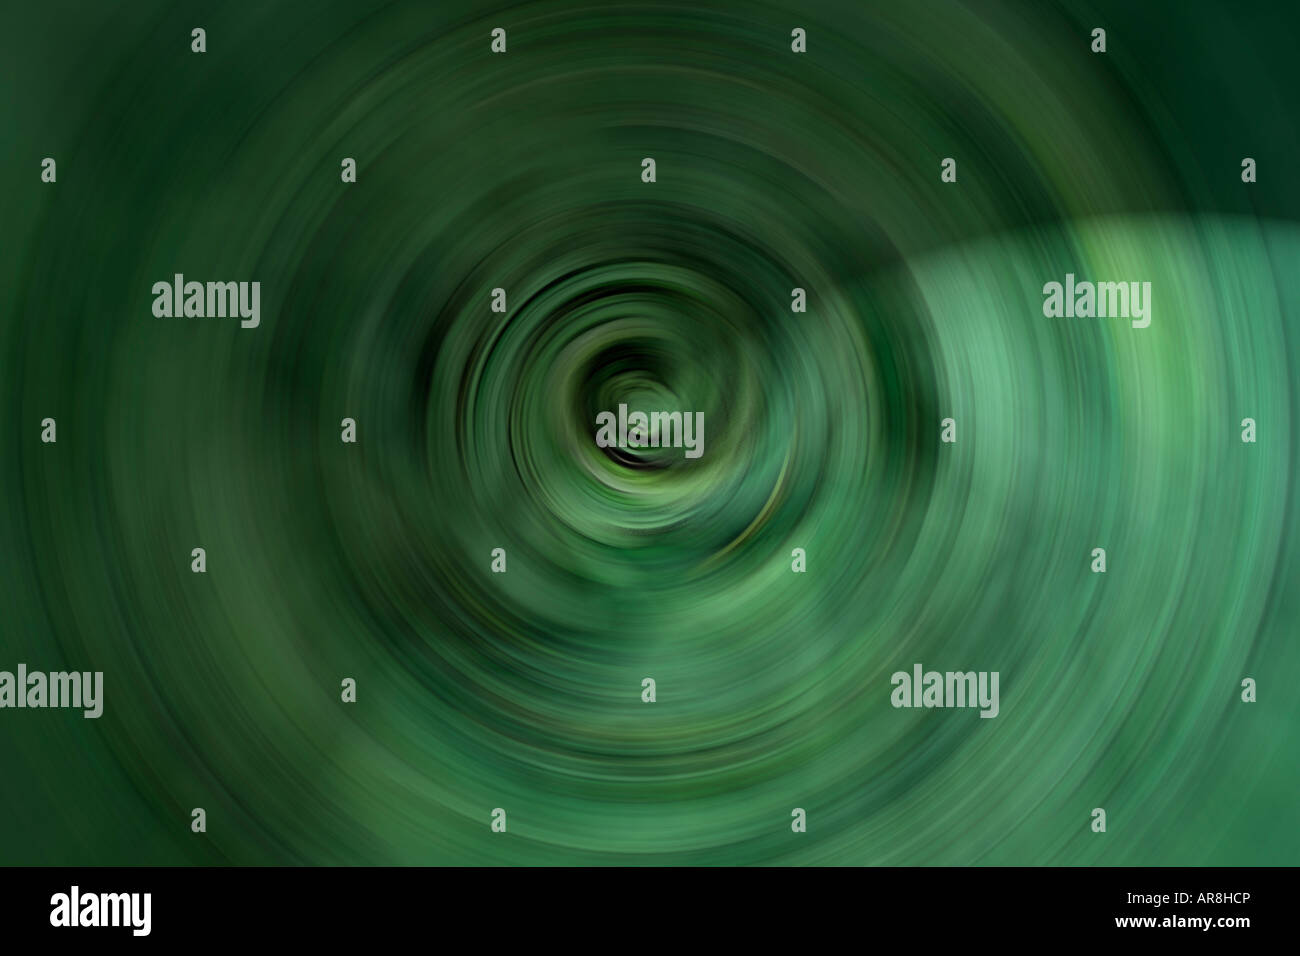 Illustrazione di un veloce pianeta rotante, sfera verde ruota sul suo asse, accesa su un lato, lato oscuro oscurati da ombre Foto Stock